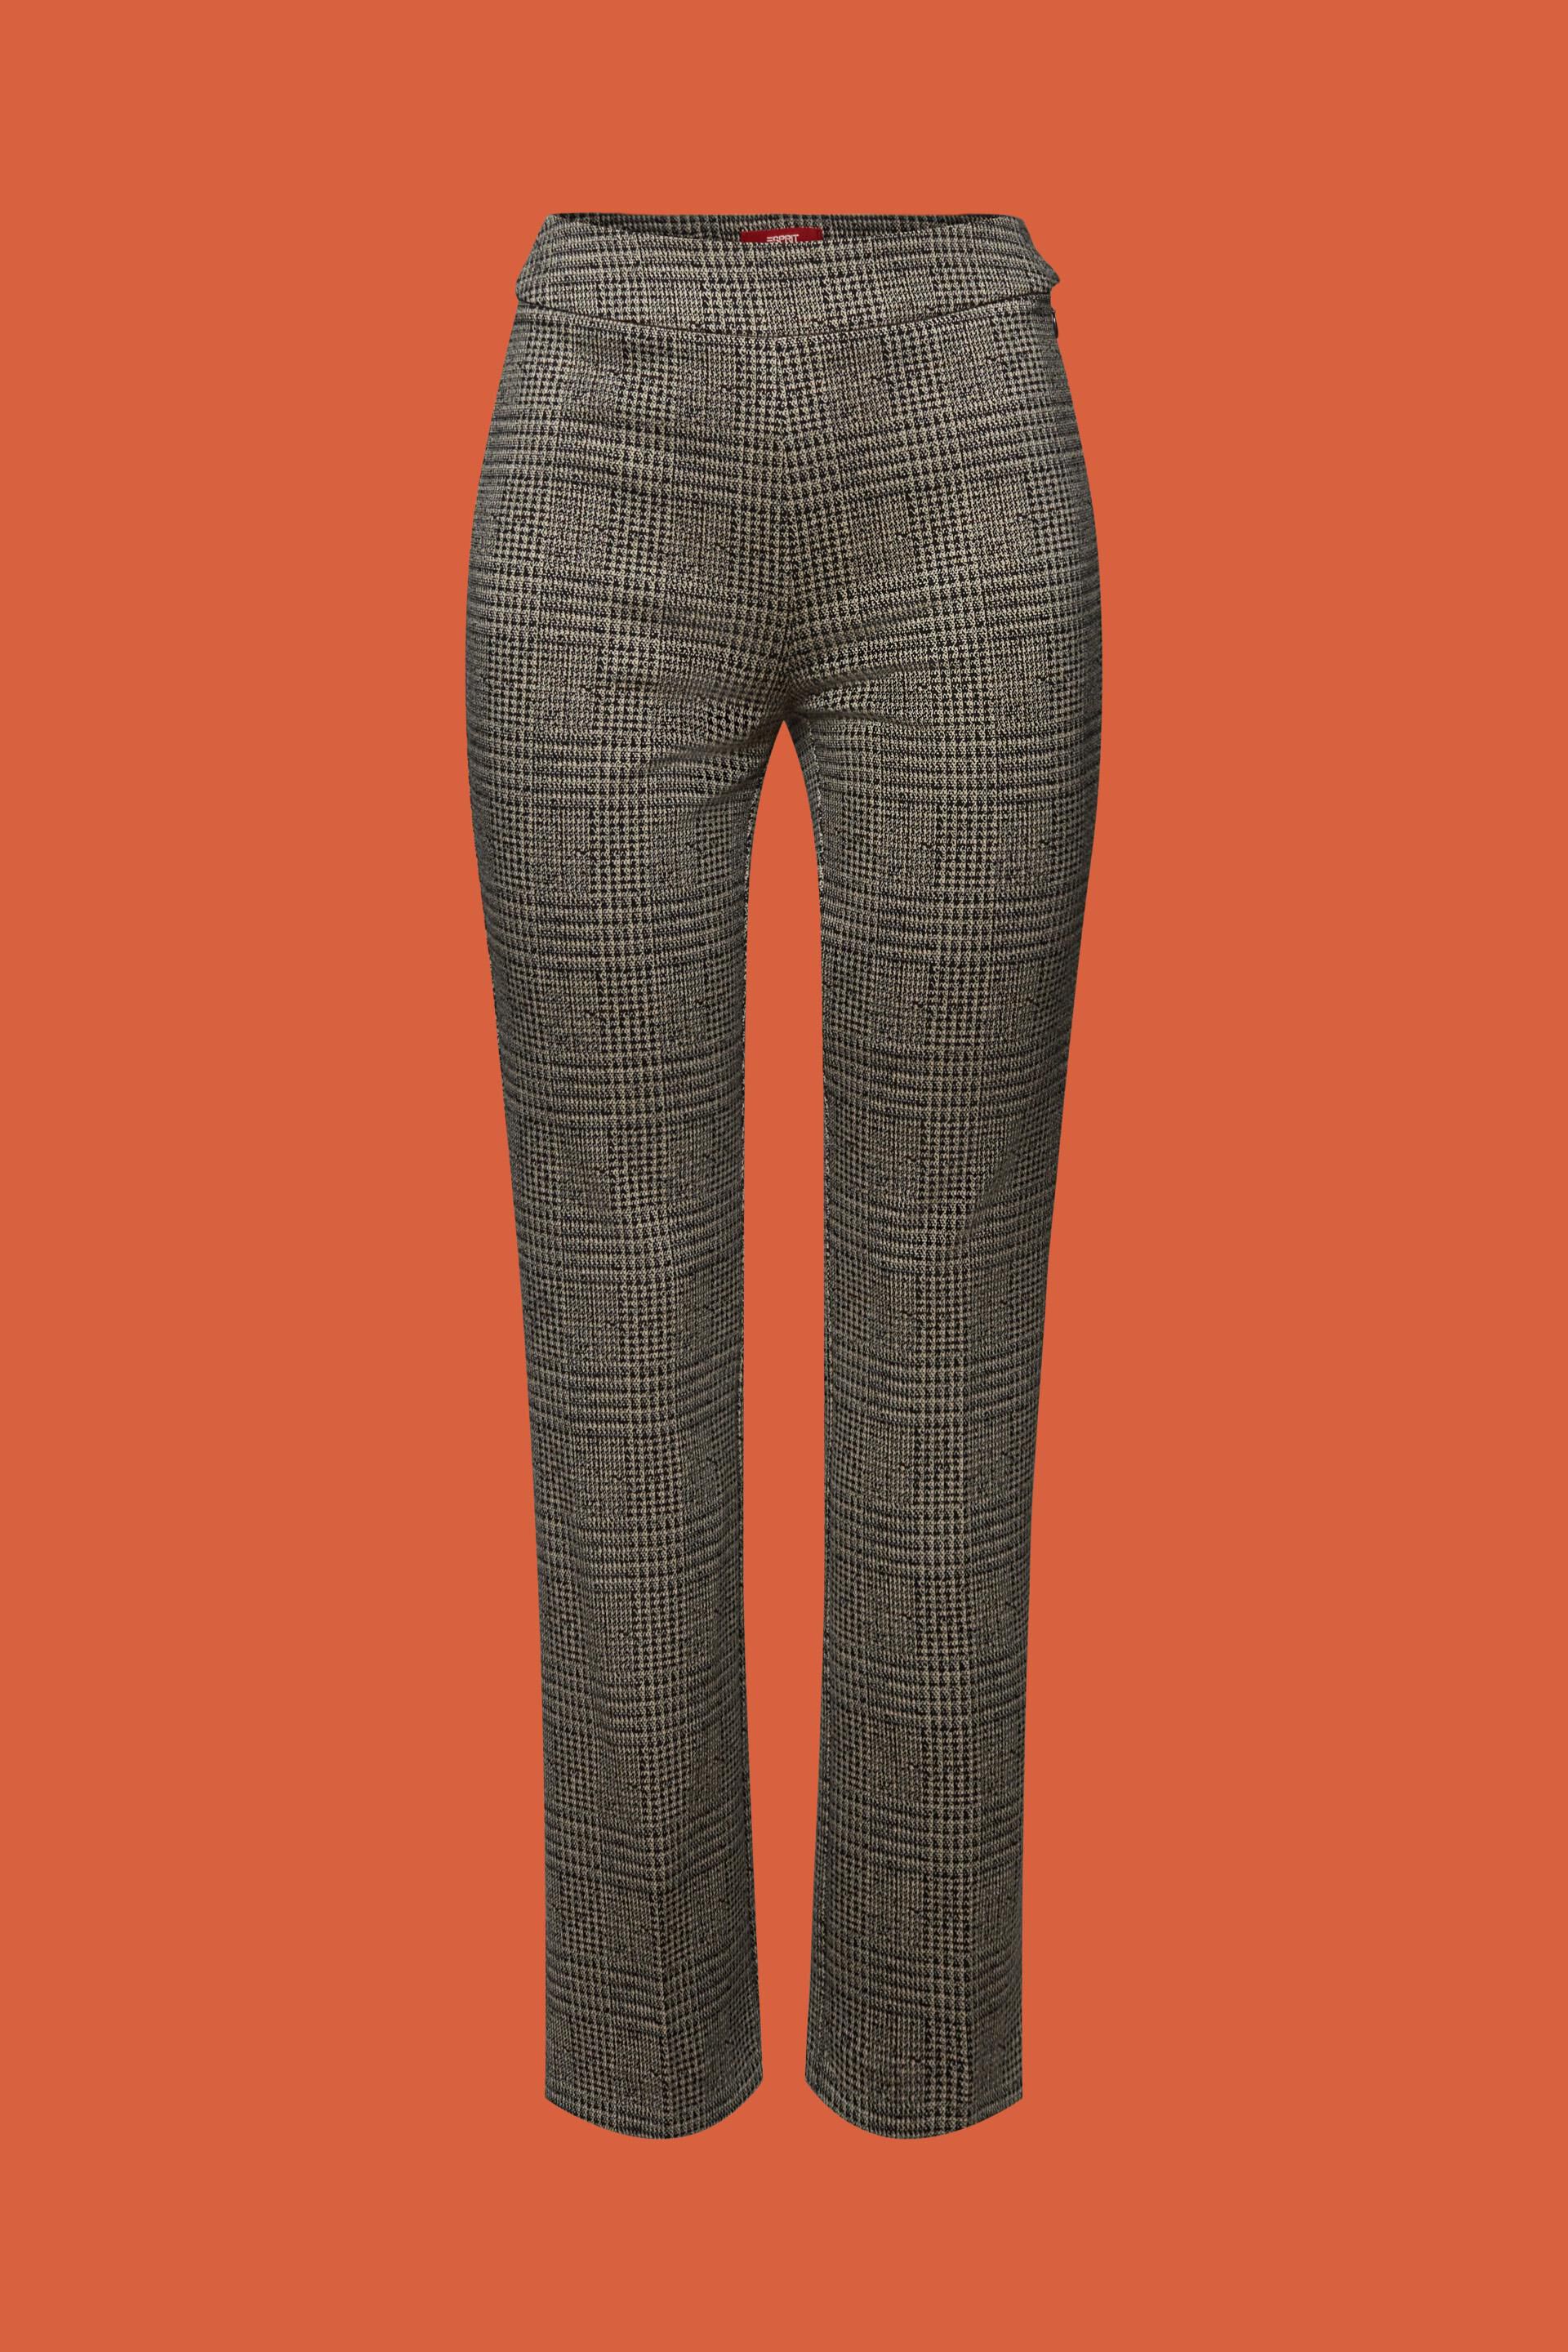 Patterned Slip-On Pants at our online shop - ESPRIT